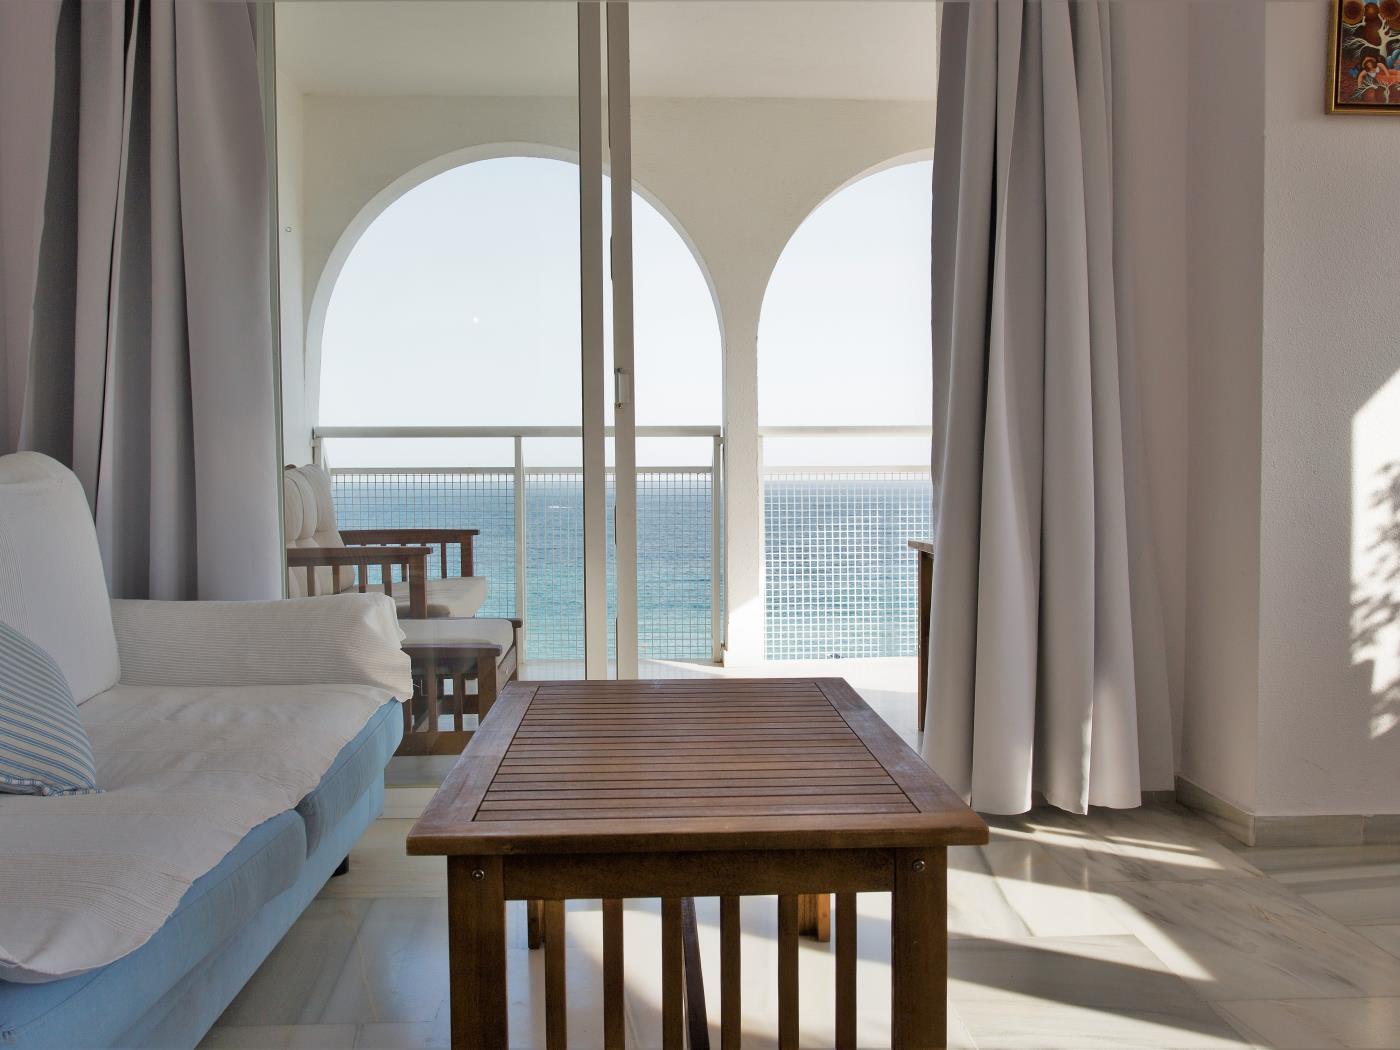 Apto. Velilla. Precioso apartamento con vistas al mar, Almuñecar. en Almuñécar